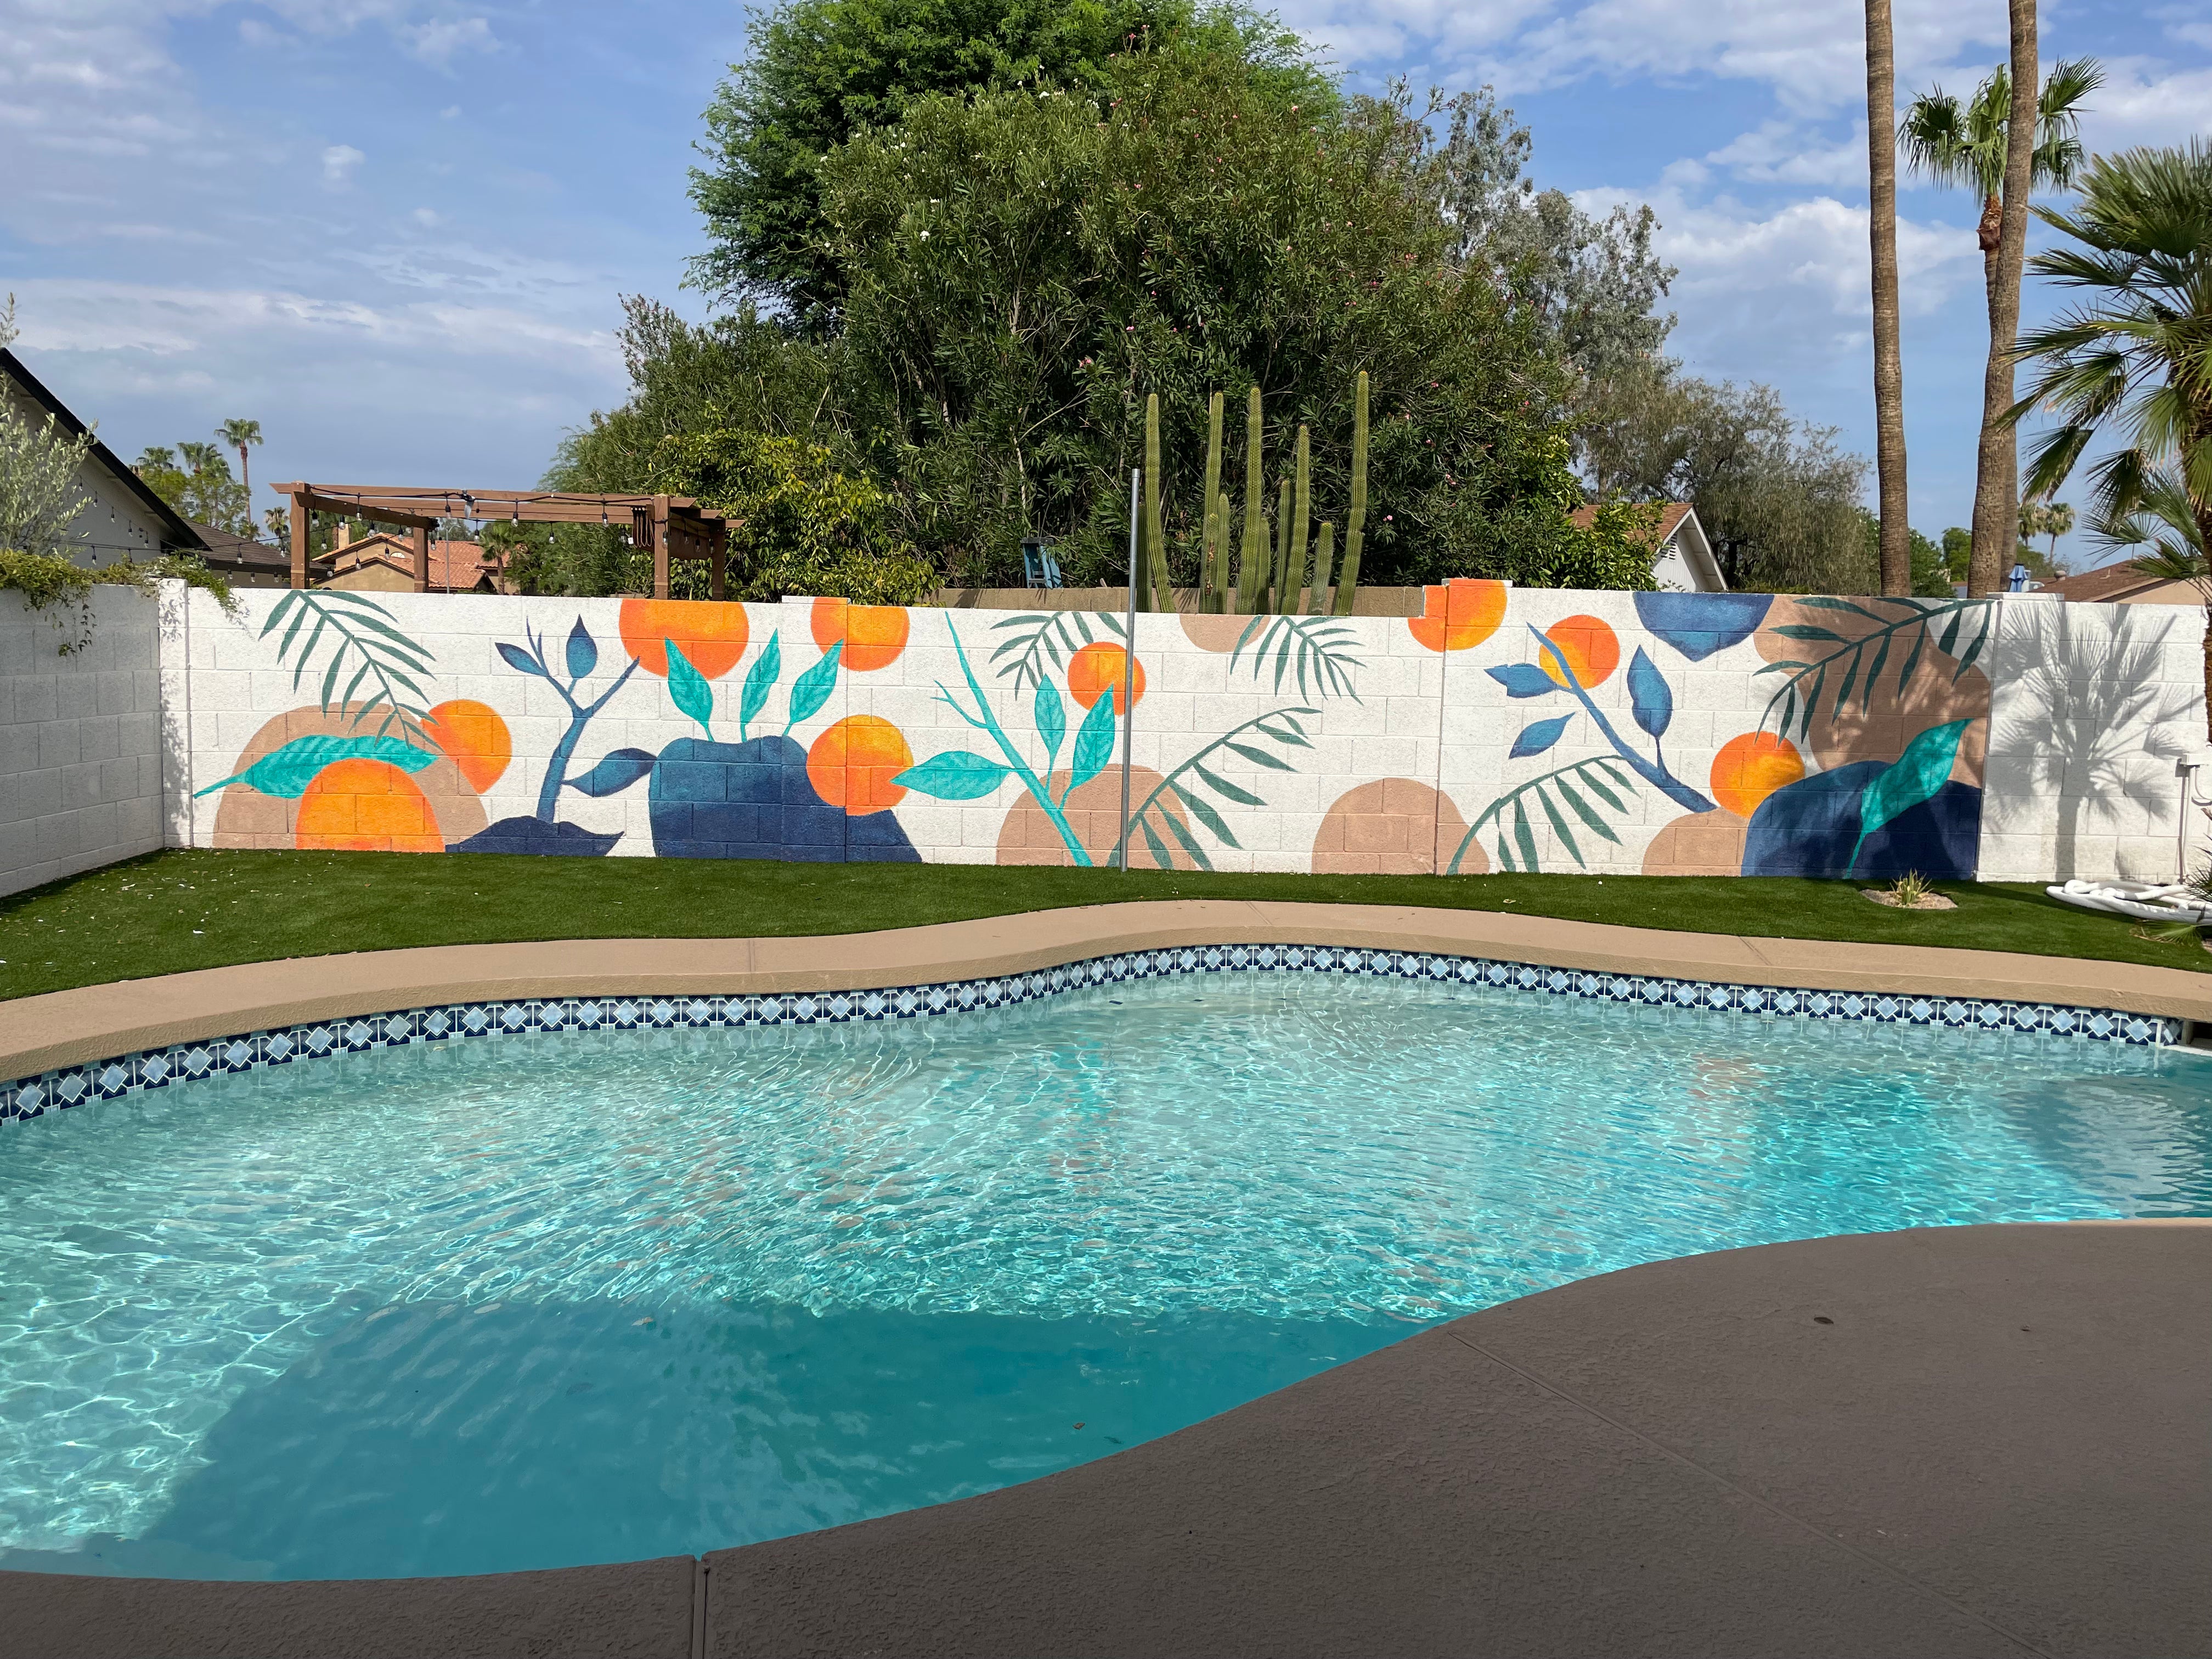 Outdoor Pool Mural in Scottsdale, Arizona